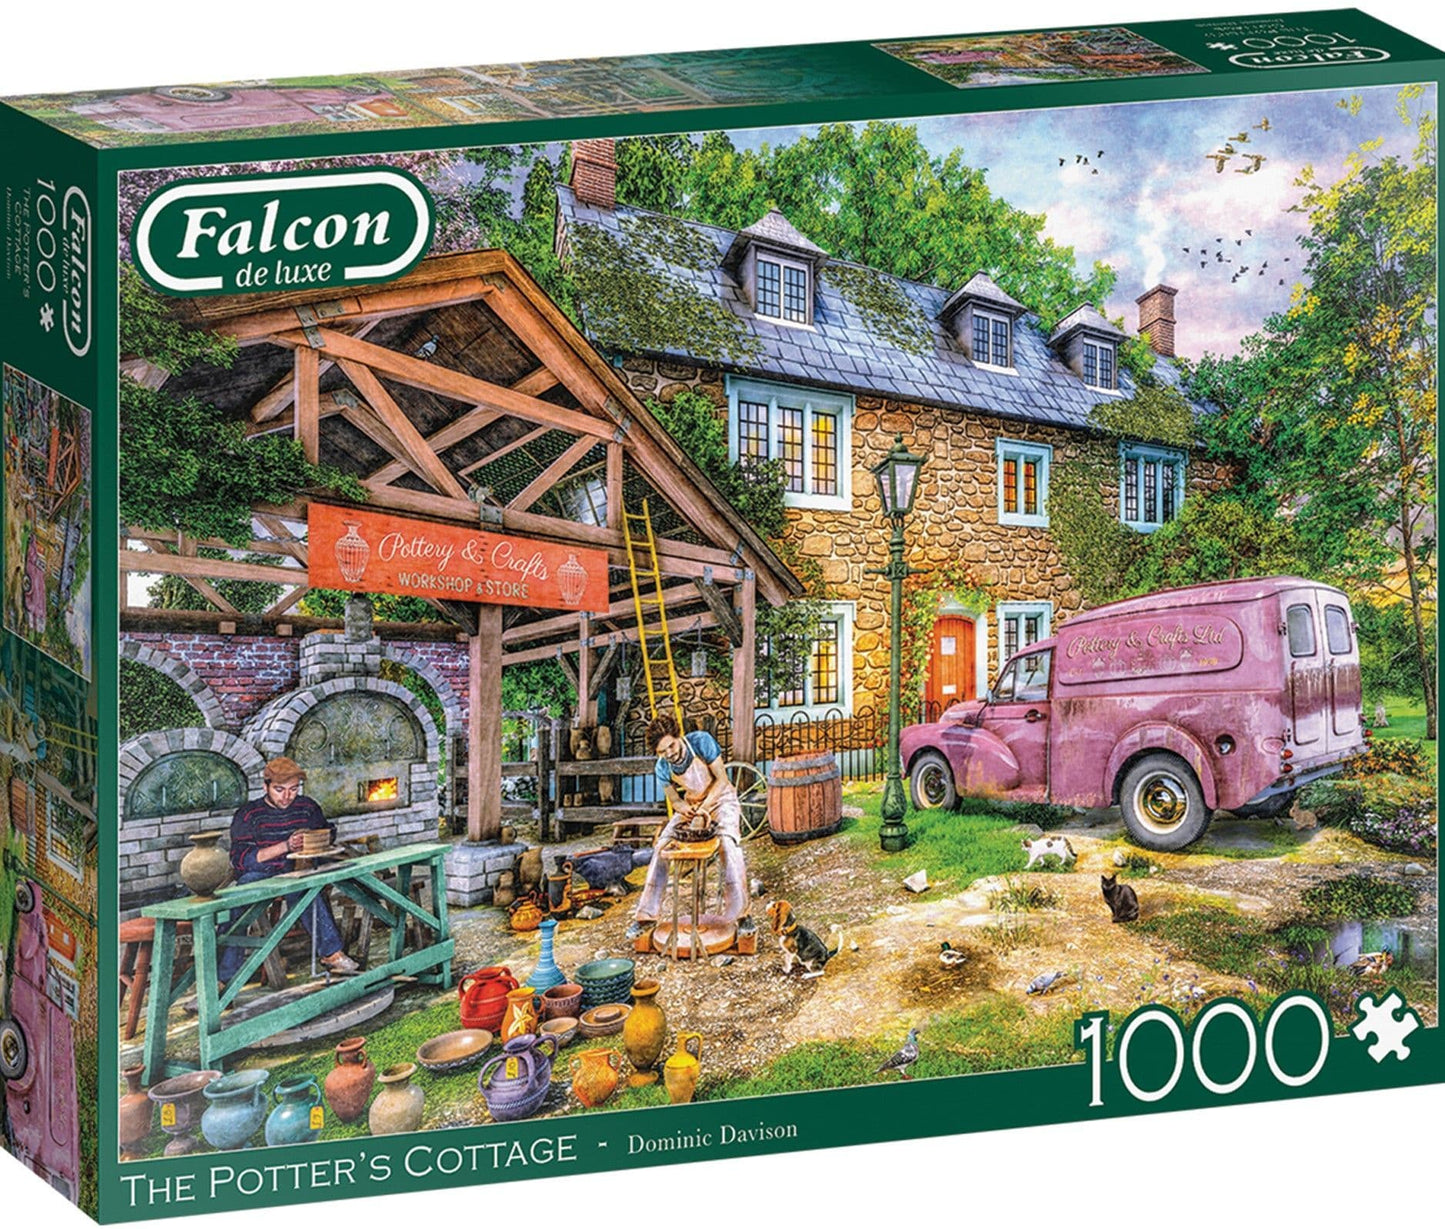 Falcon de luxe - The Potters Cottage - 1000 Piece Jigsaw Puzzle